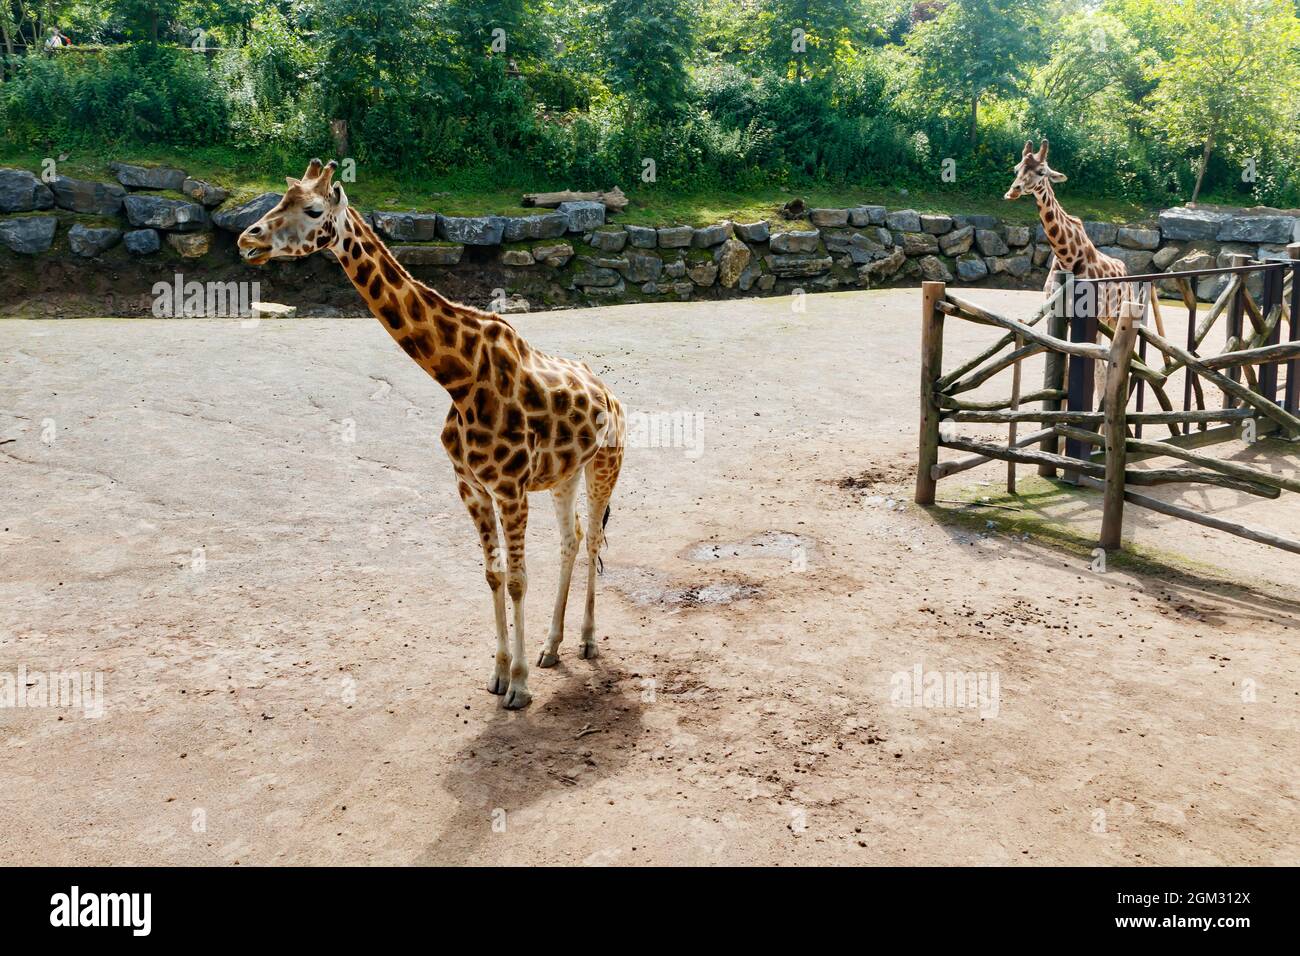 Zwei wunderschöne Giraffen, die im Sommer im Park spazieren gehen Stockfoto